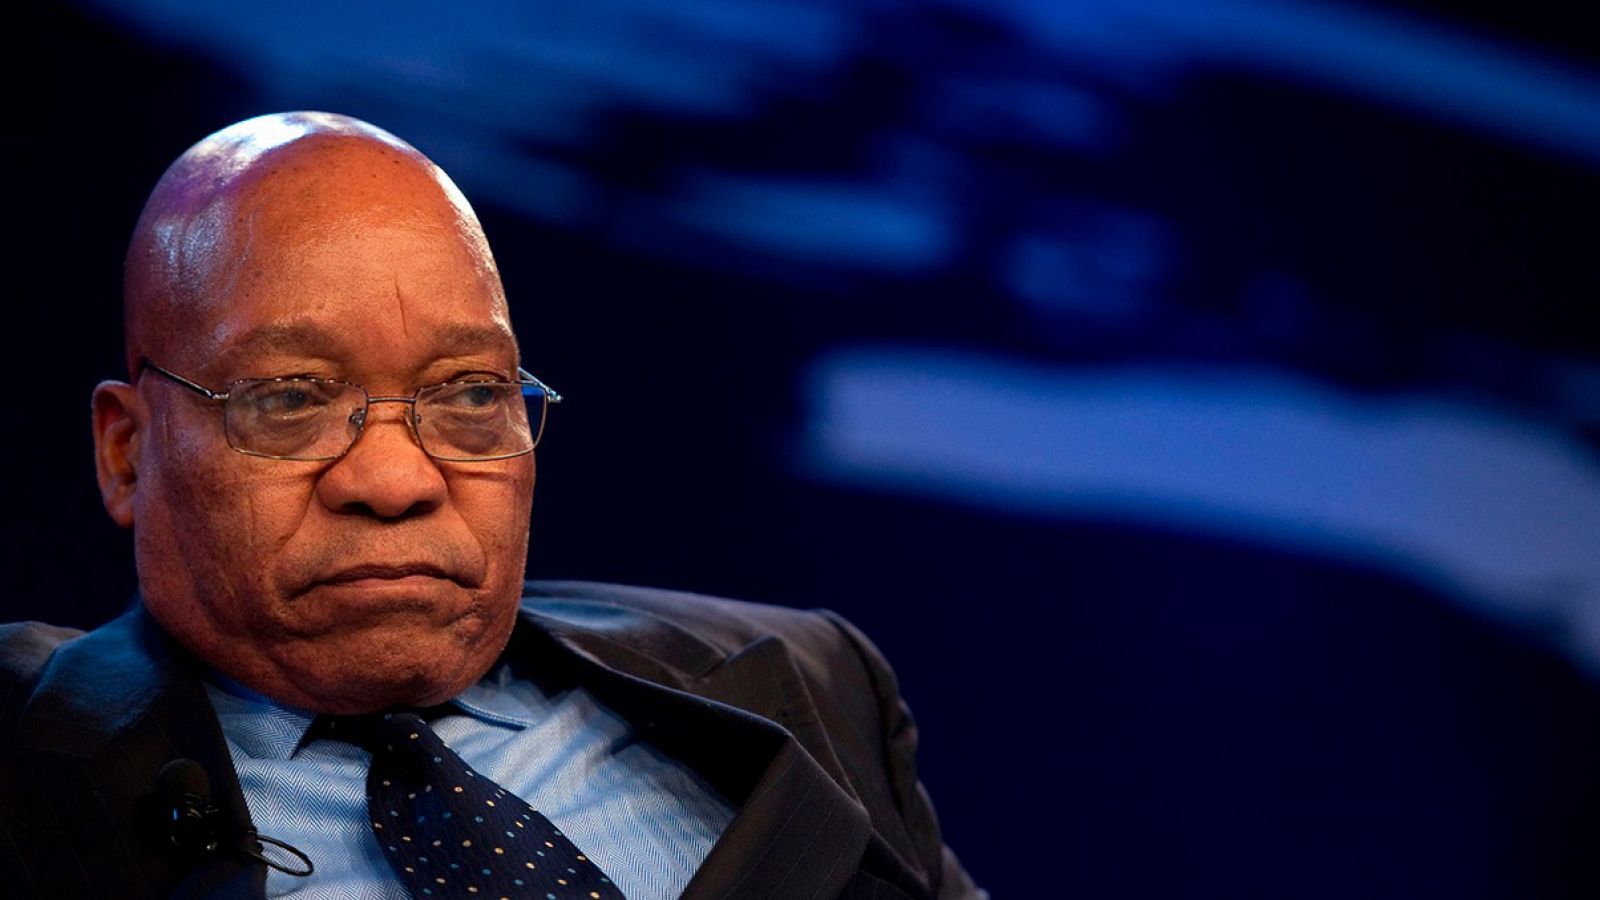 El presidente sudafricano, Jacob Zuma, en una imagen de archivo en 2011